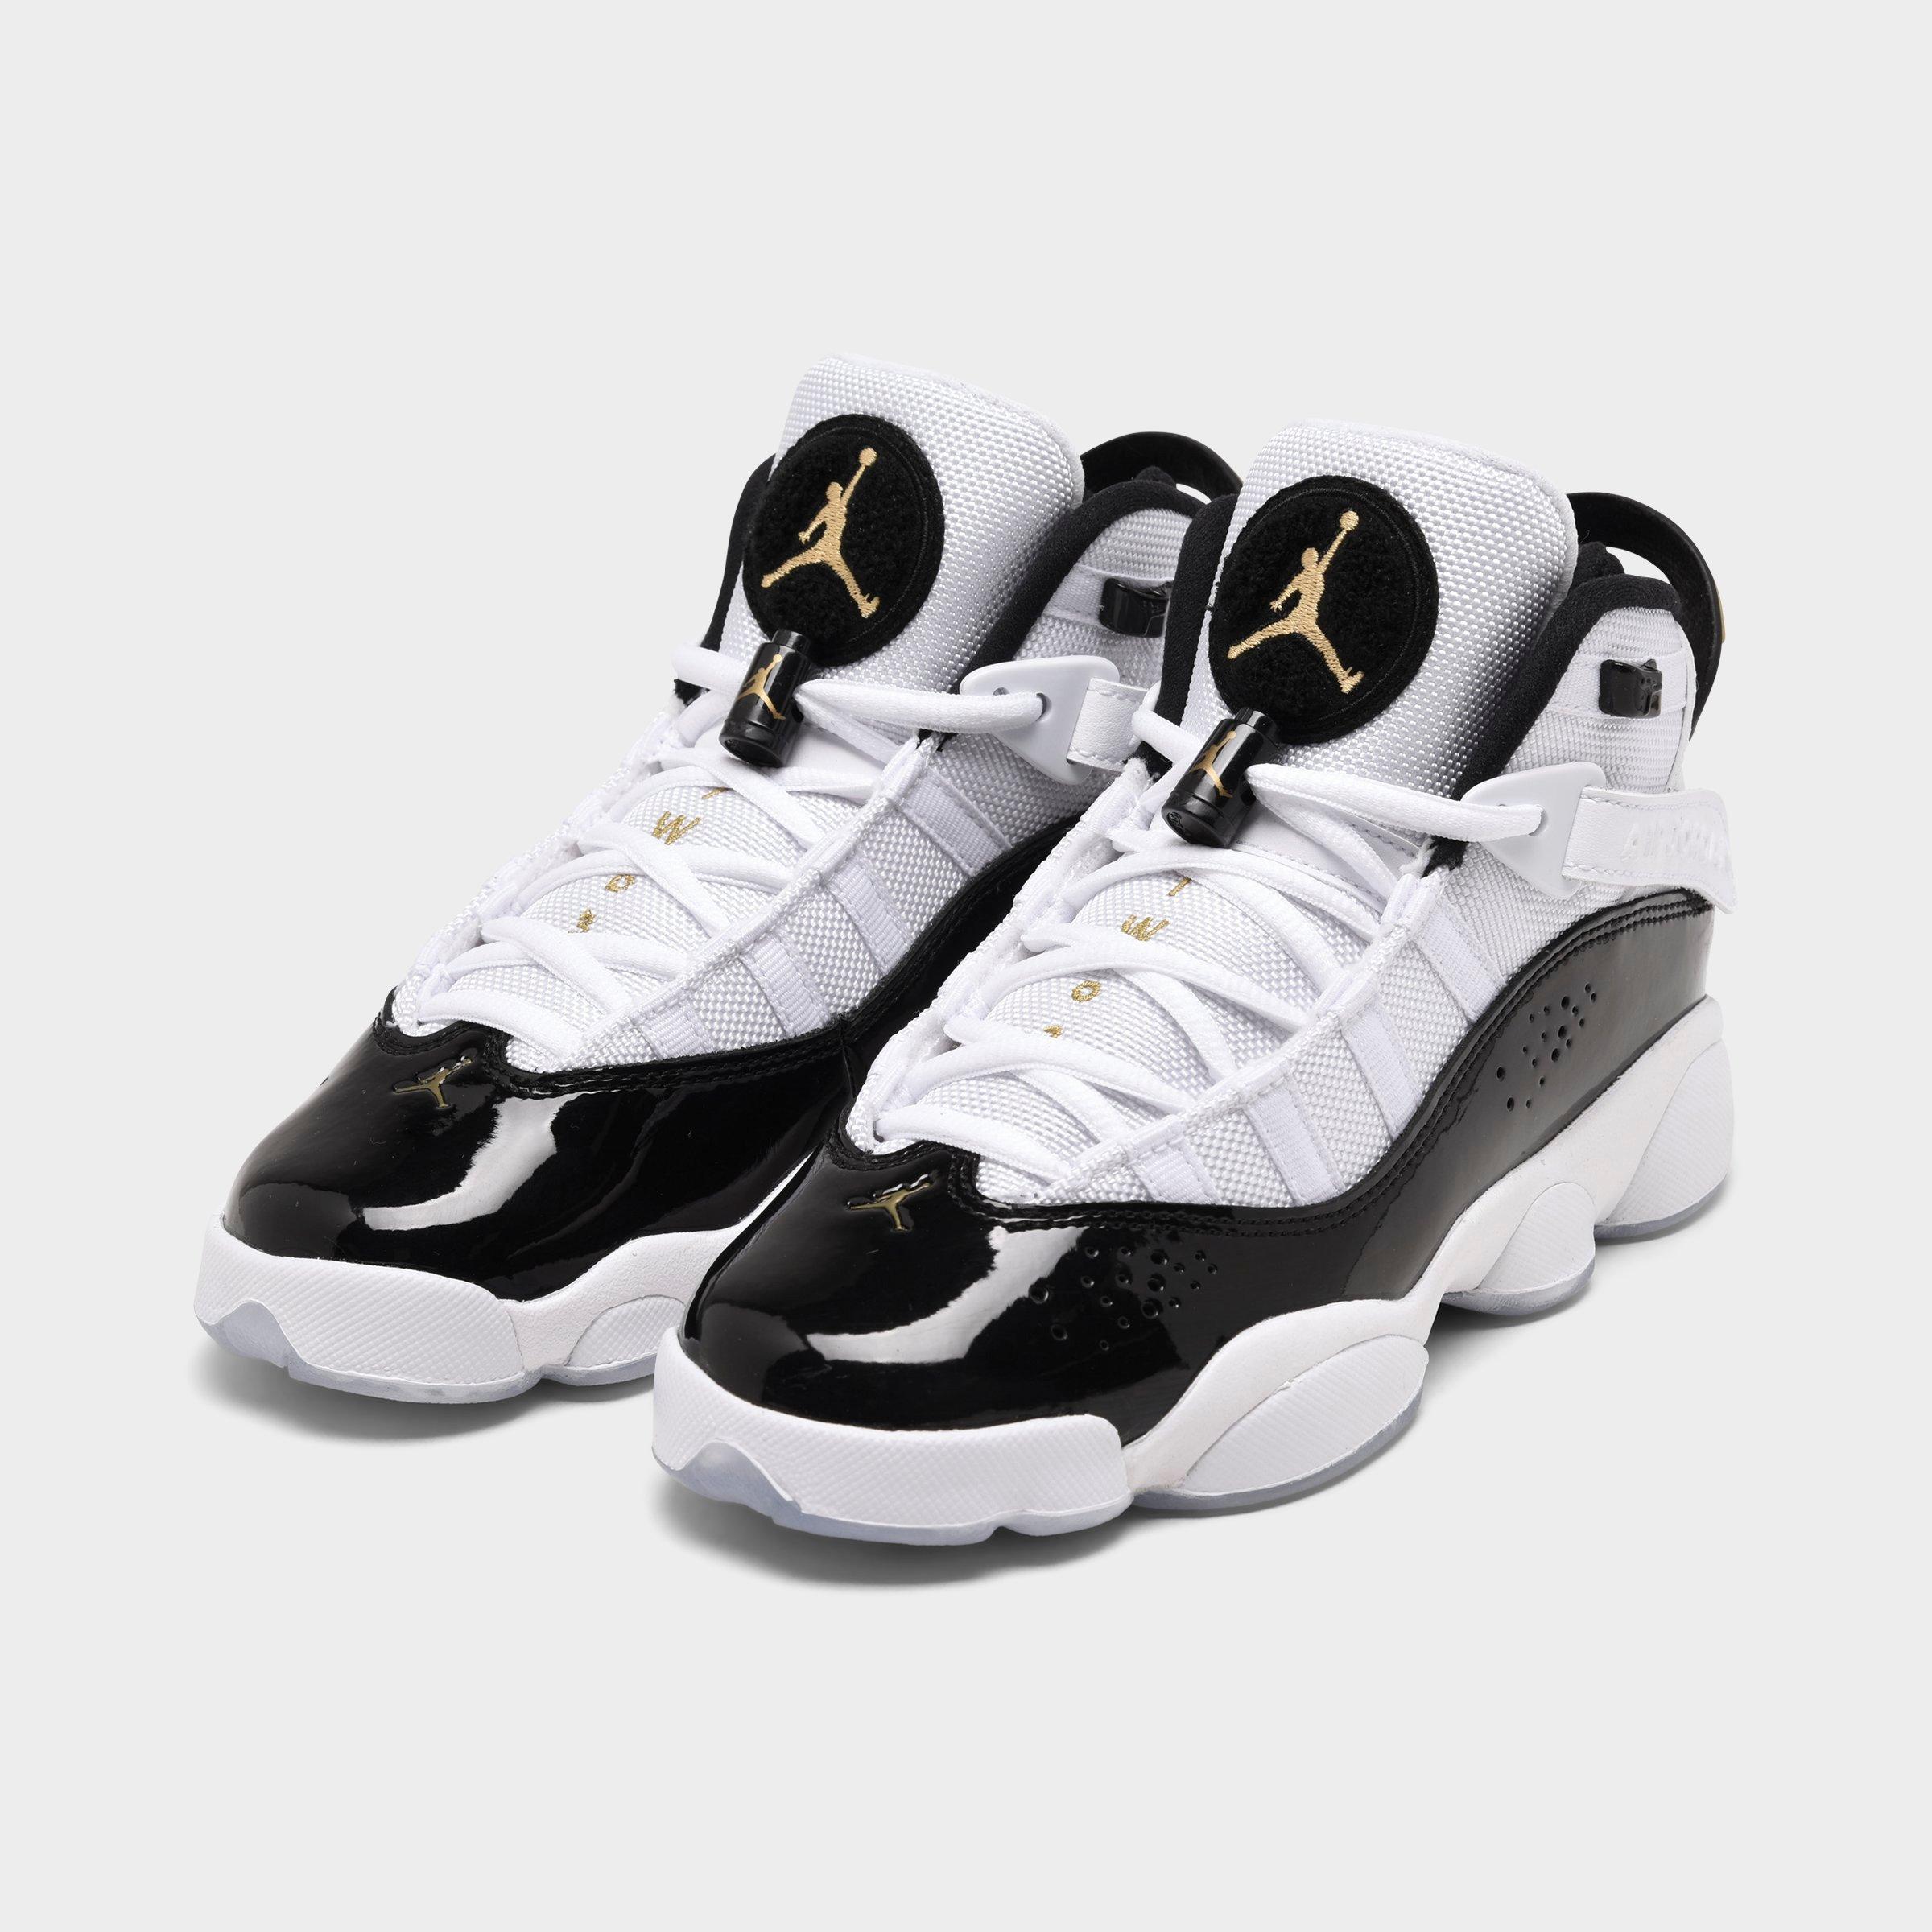 jordan 6 rings premium basketball shoes